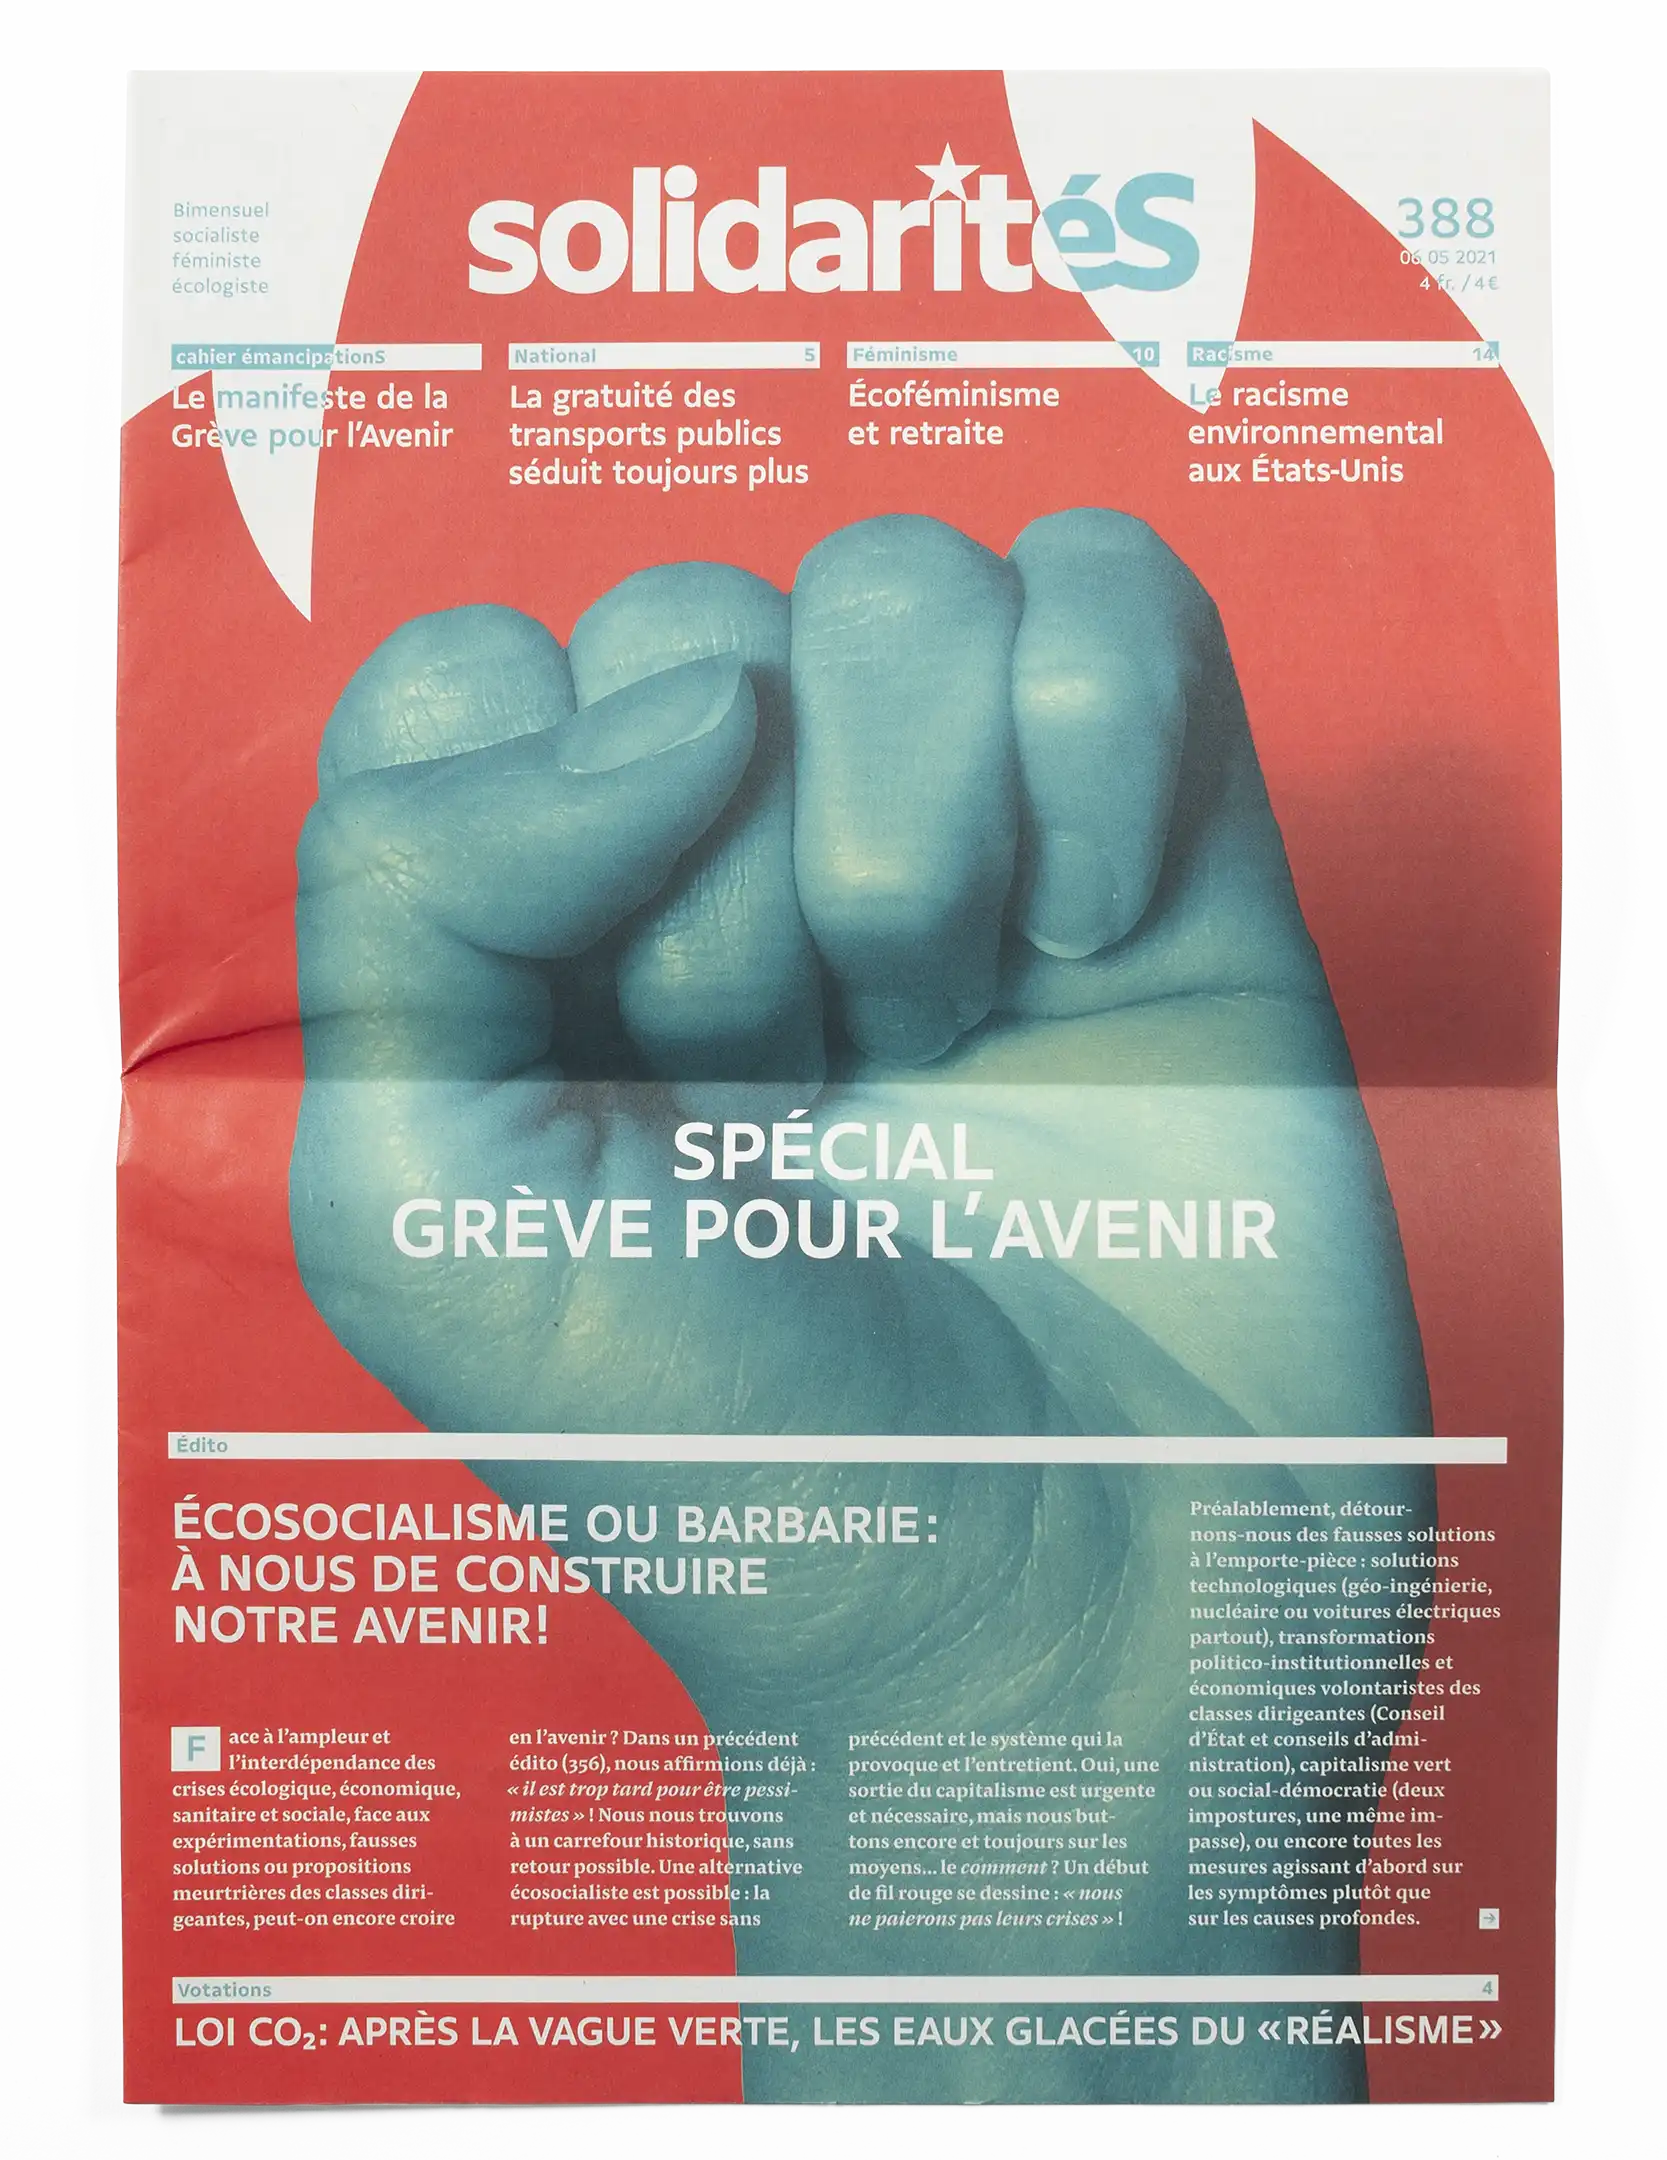 Couverture du numéro 388 du journal solidaritéS avec une photo d'un poing levé